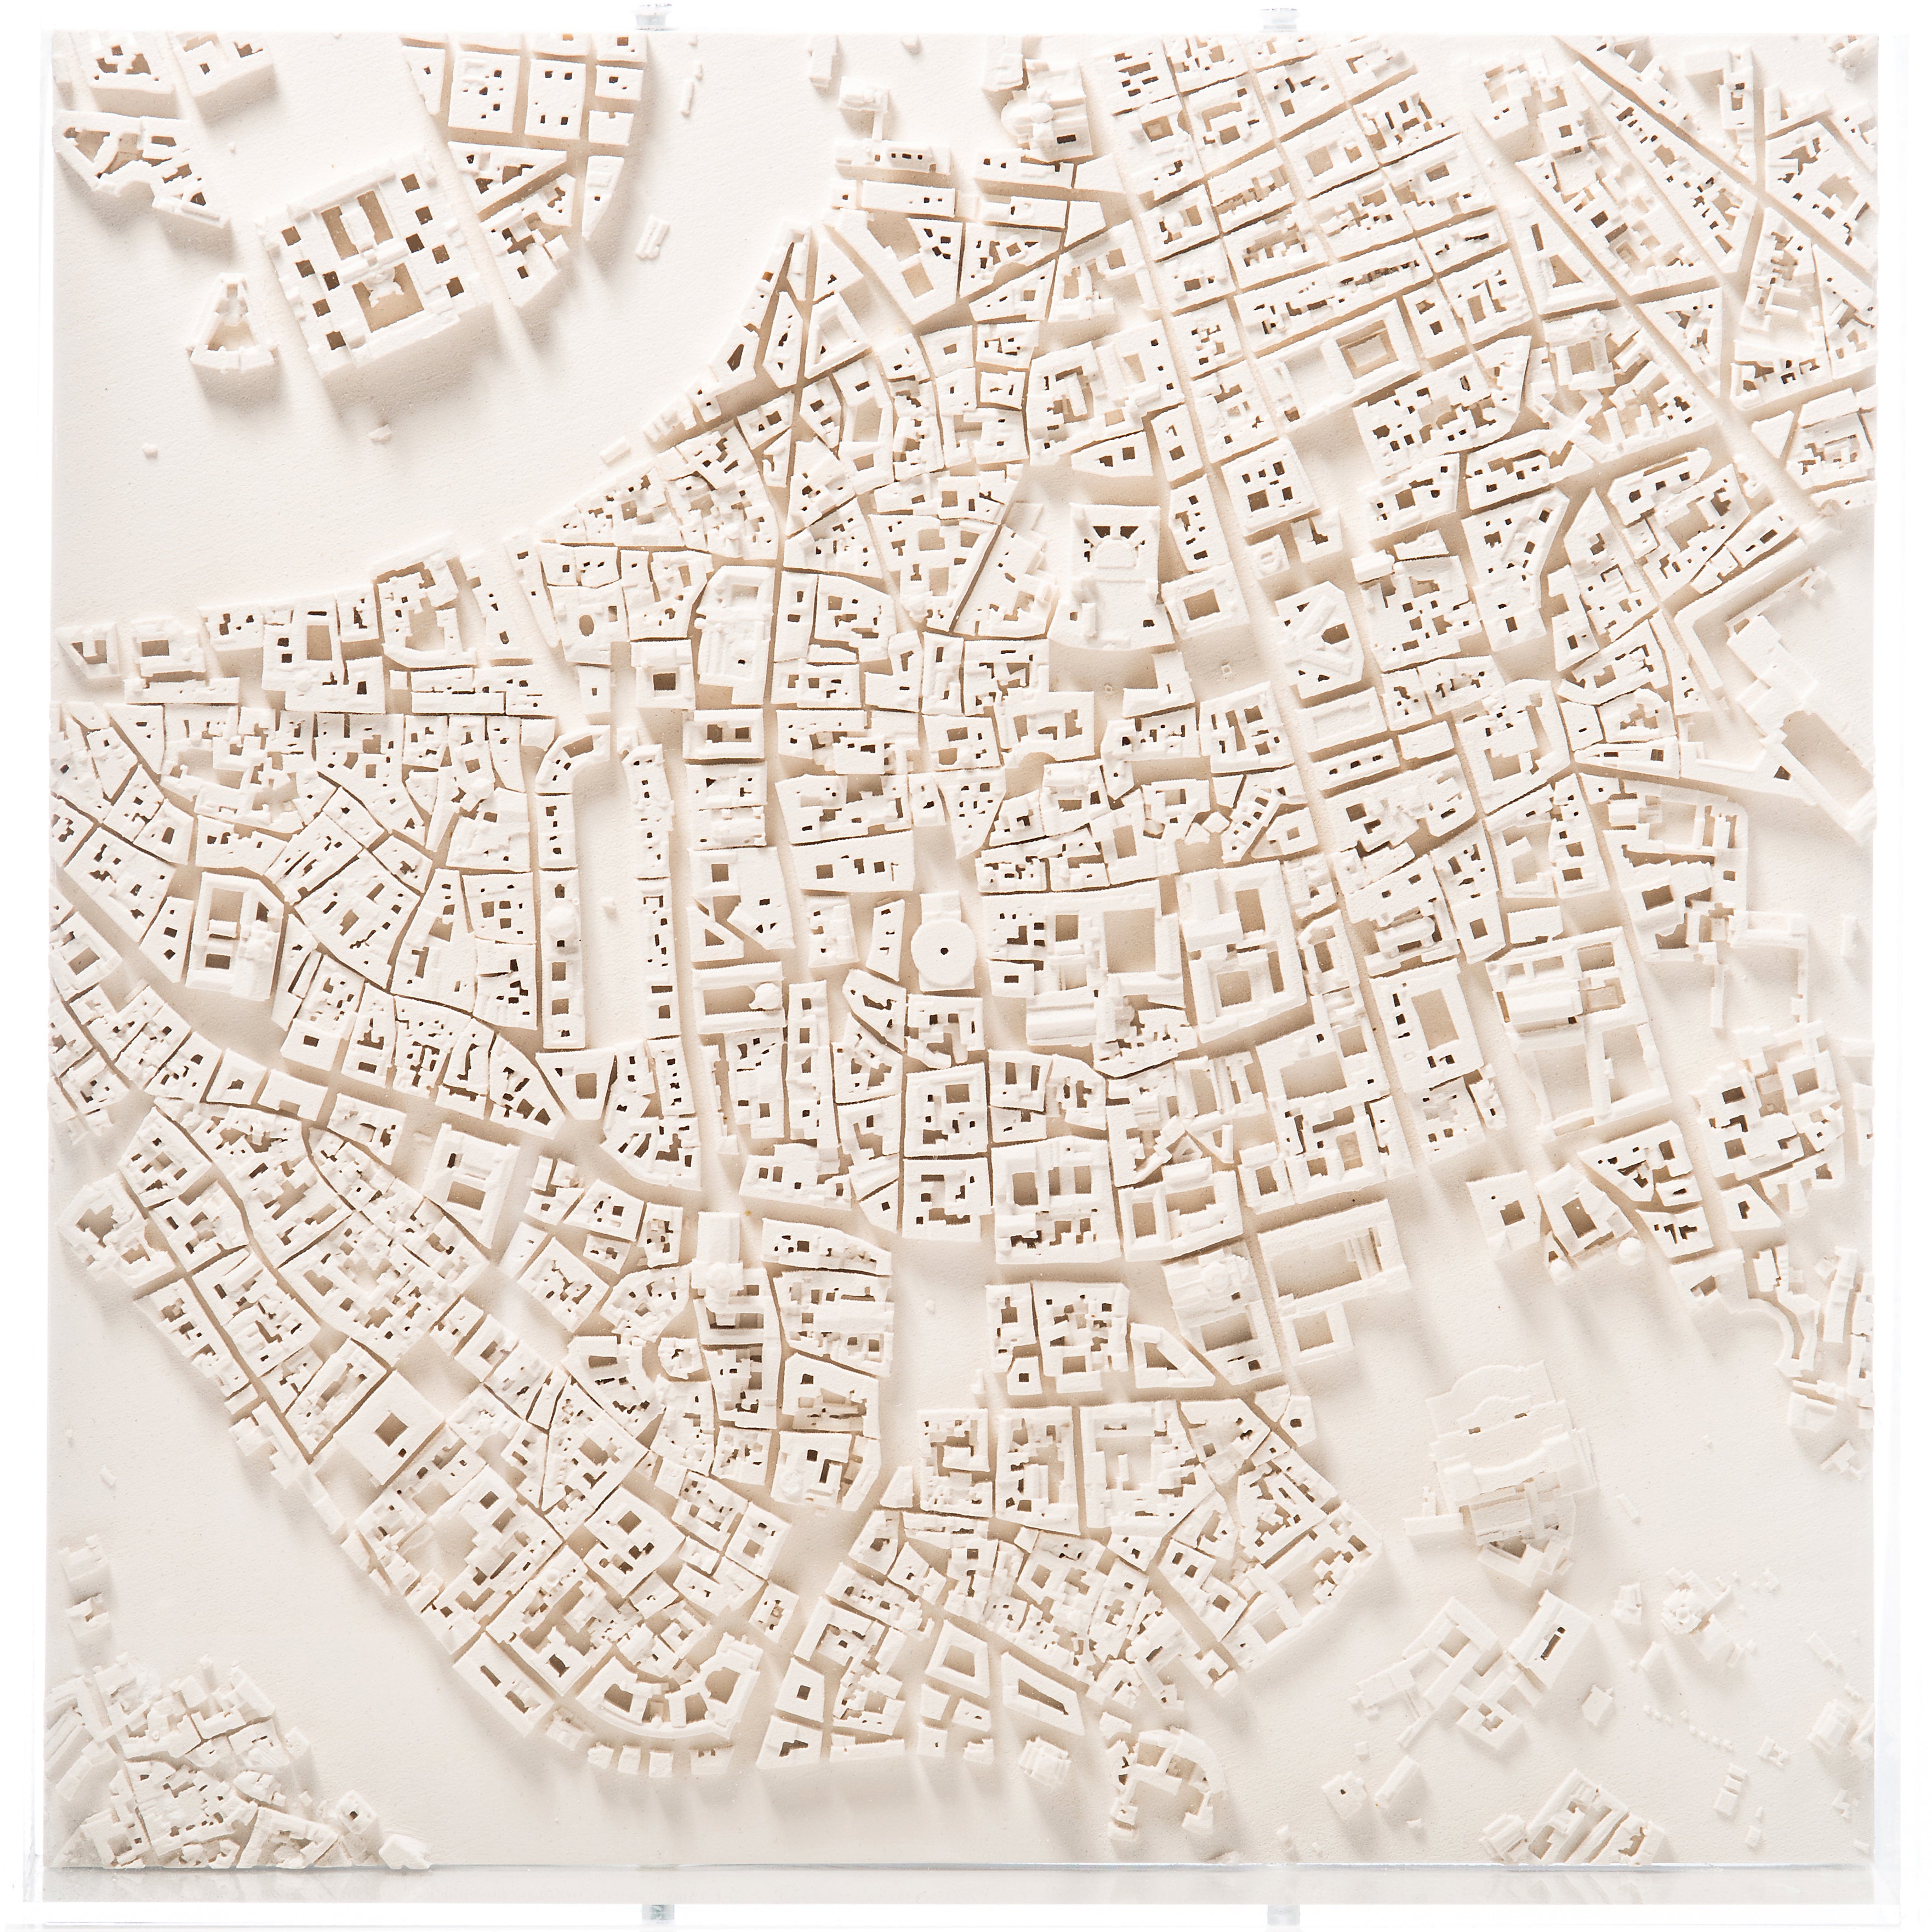 Rome Cityscape Architectural Model